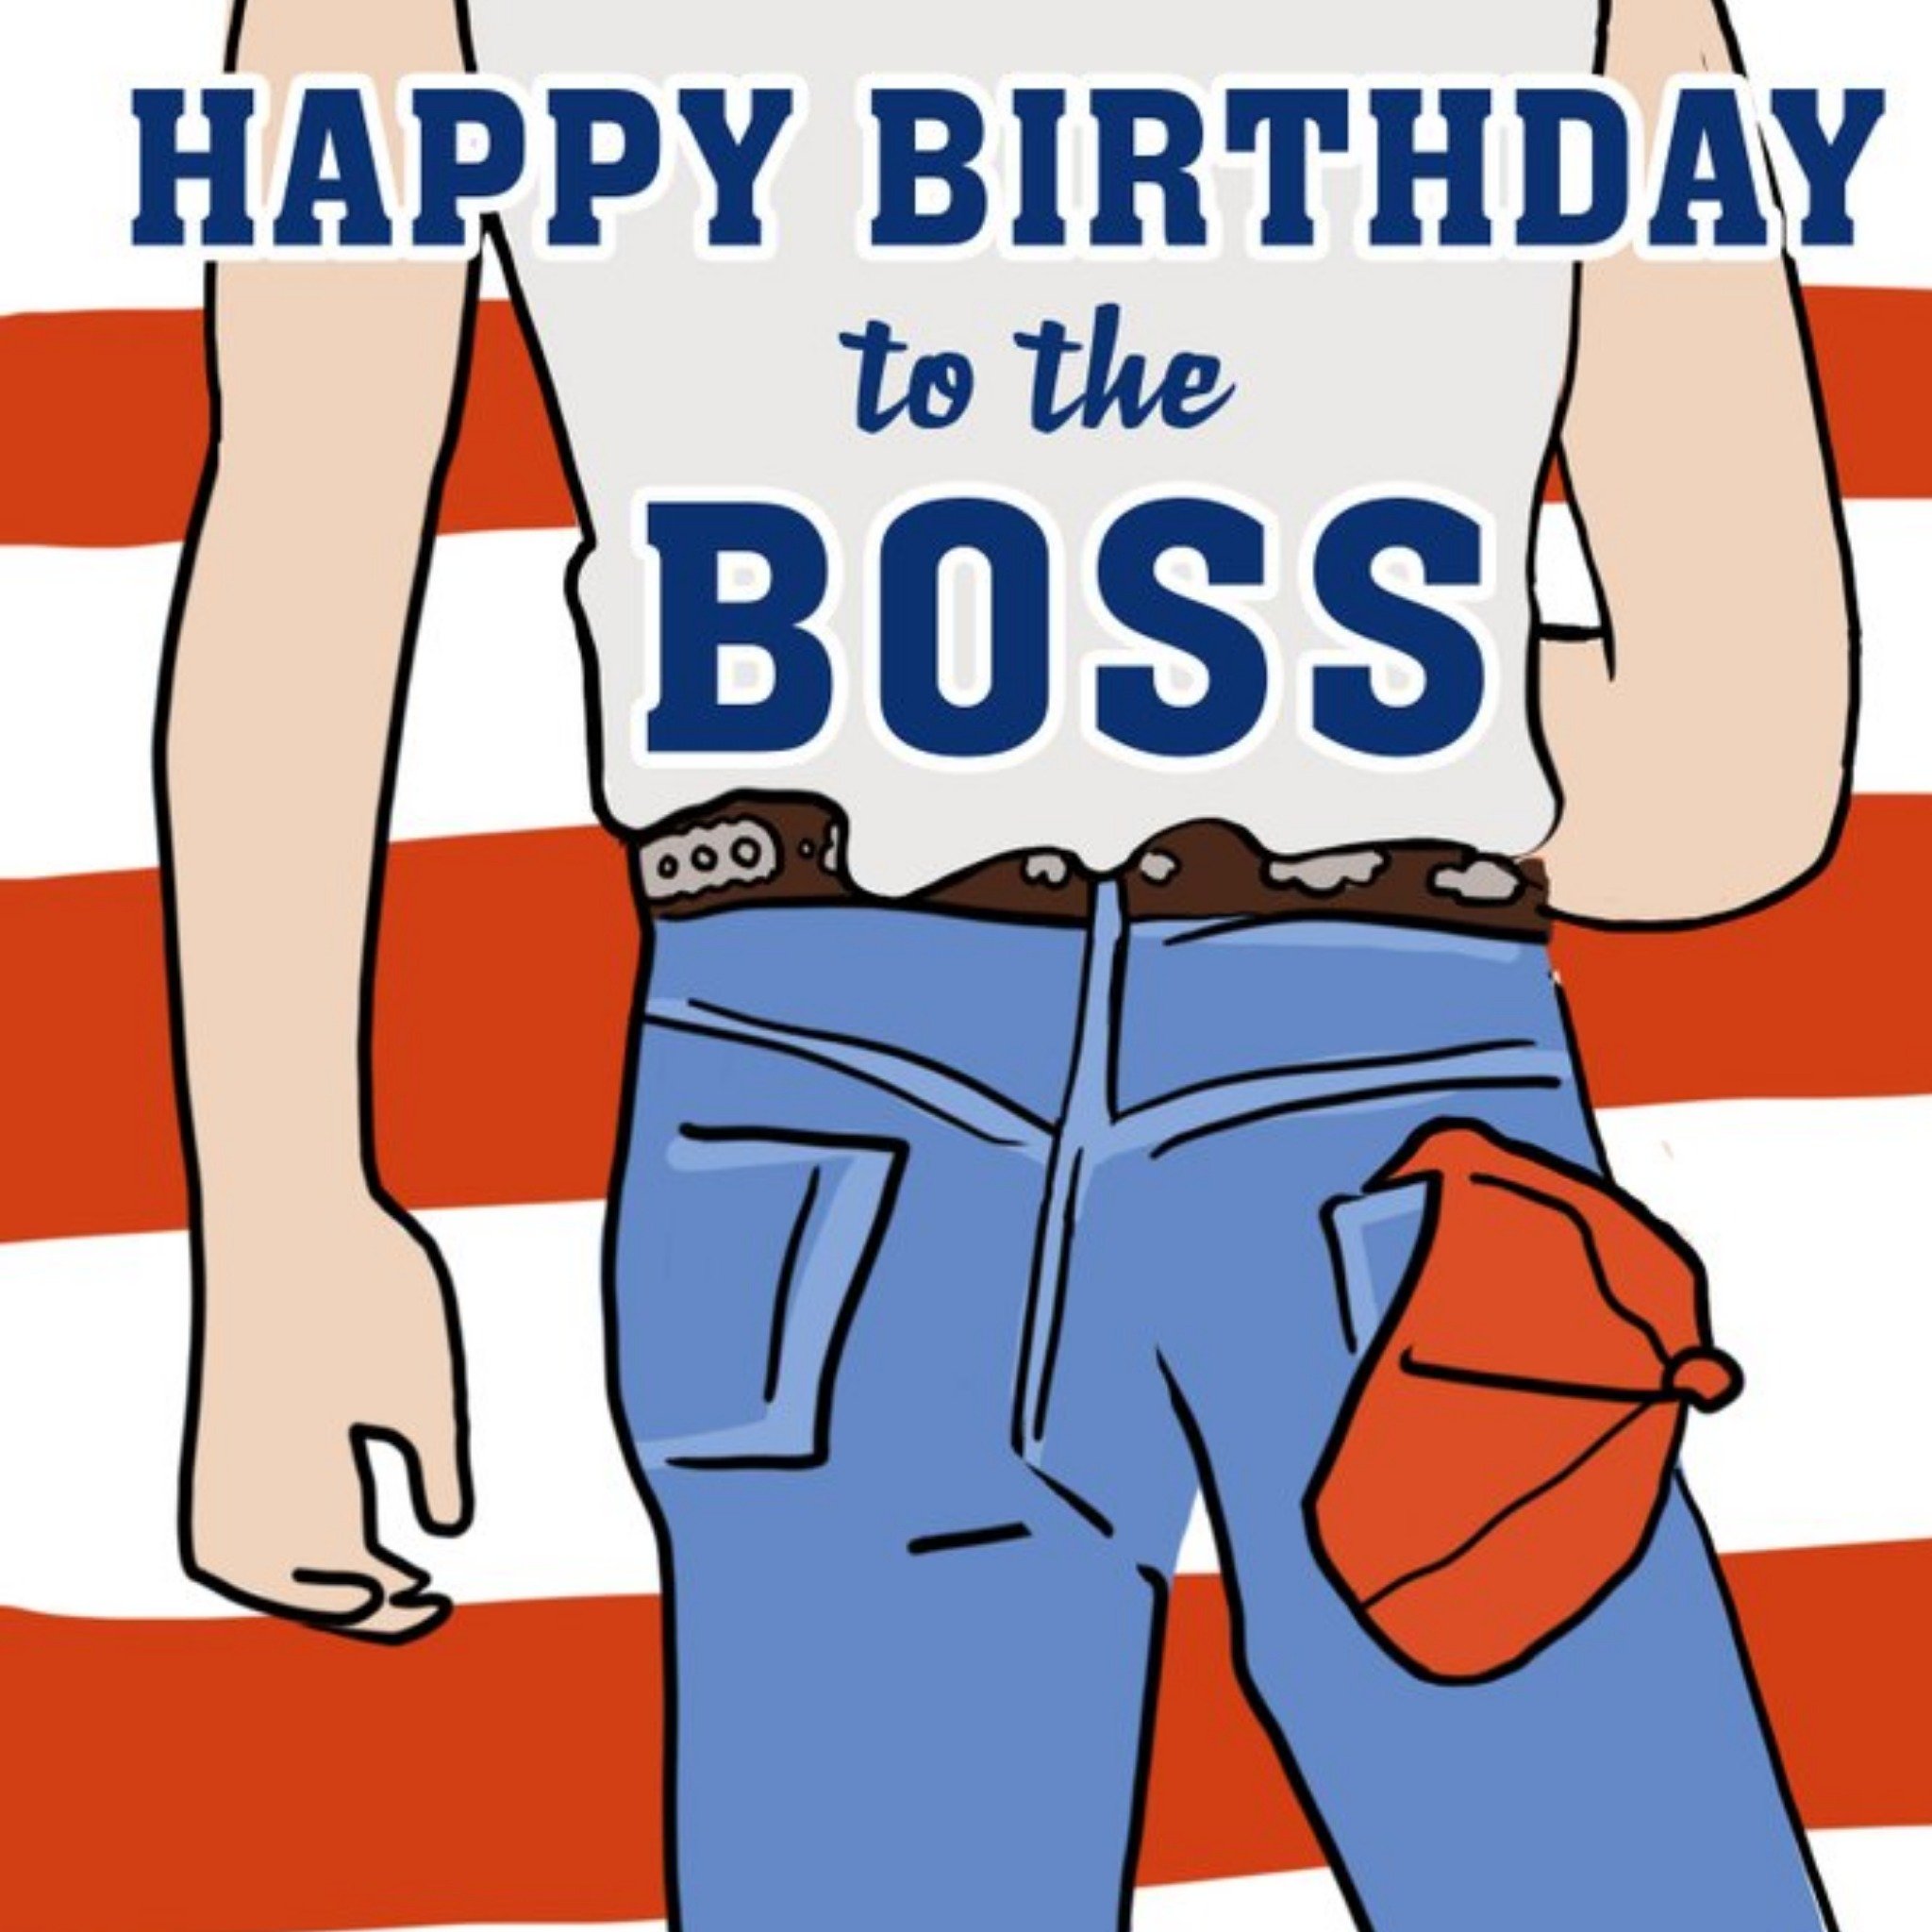 Moonpig Funny Bruce Springsteen Birthday Boss Card, Square